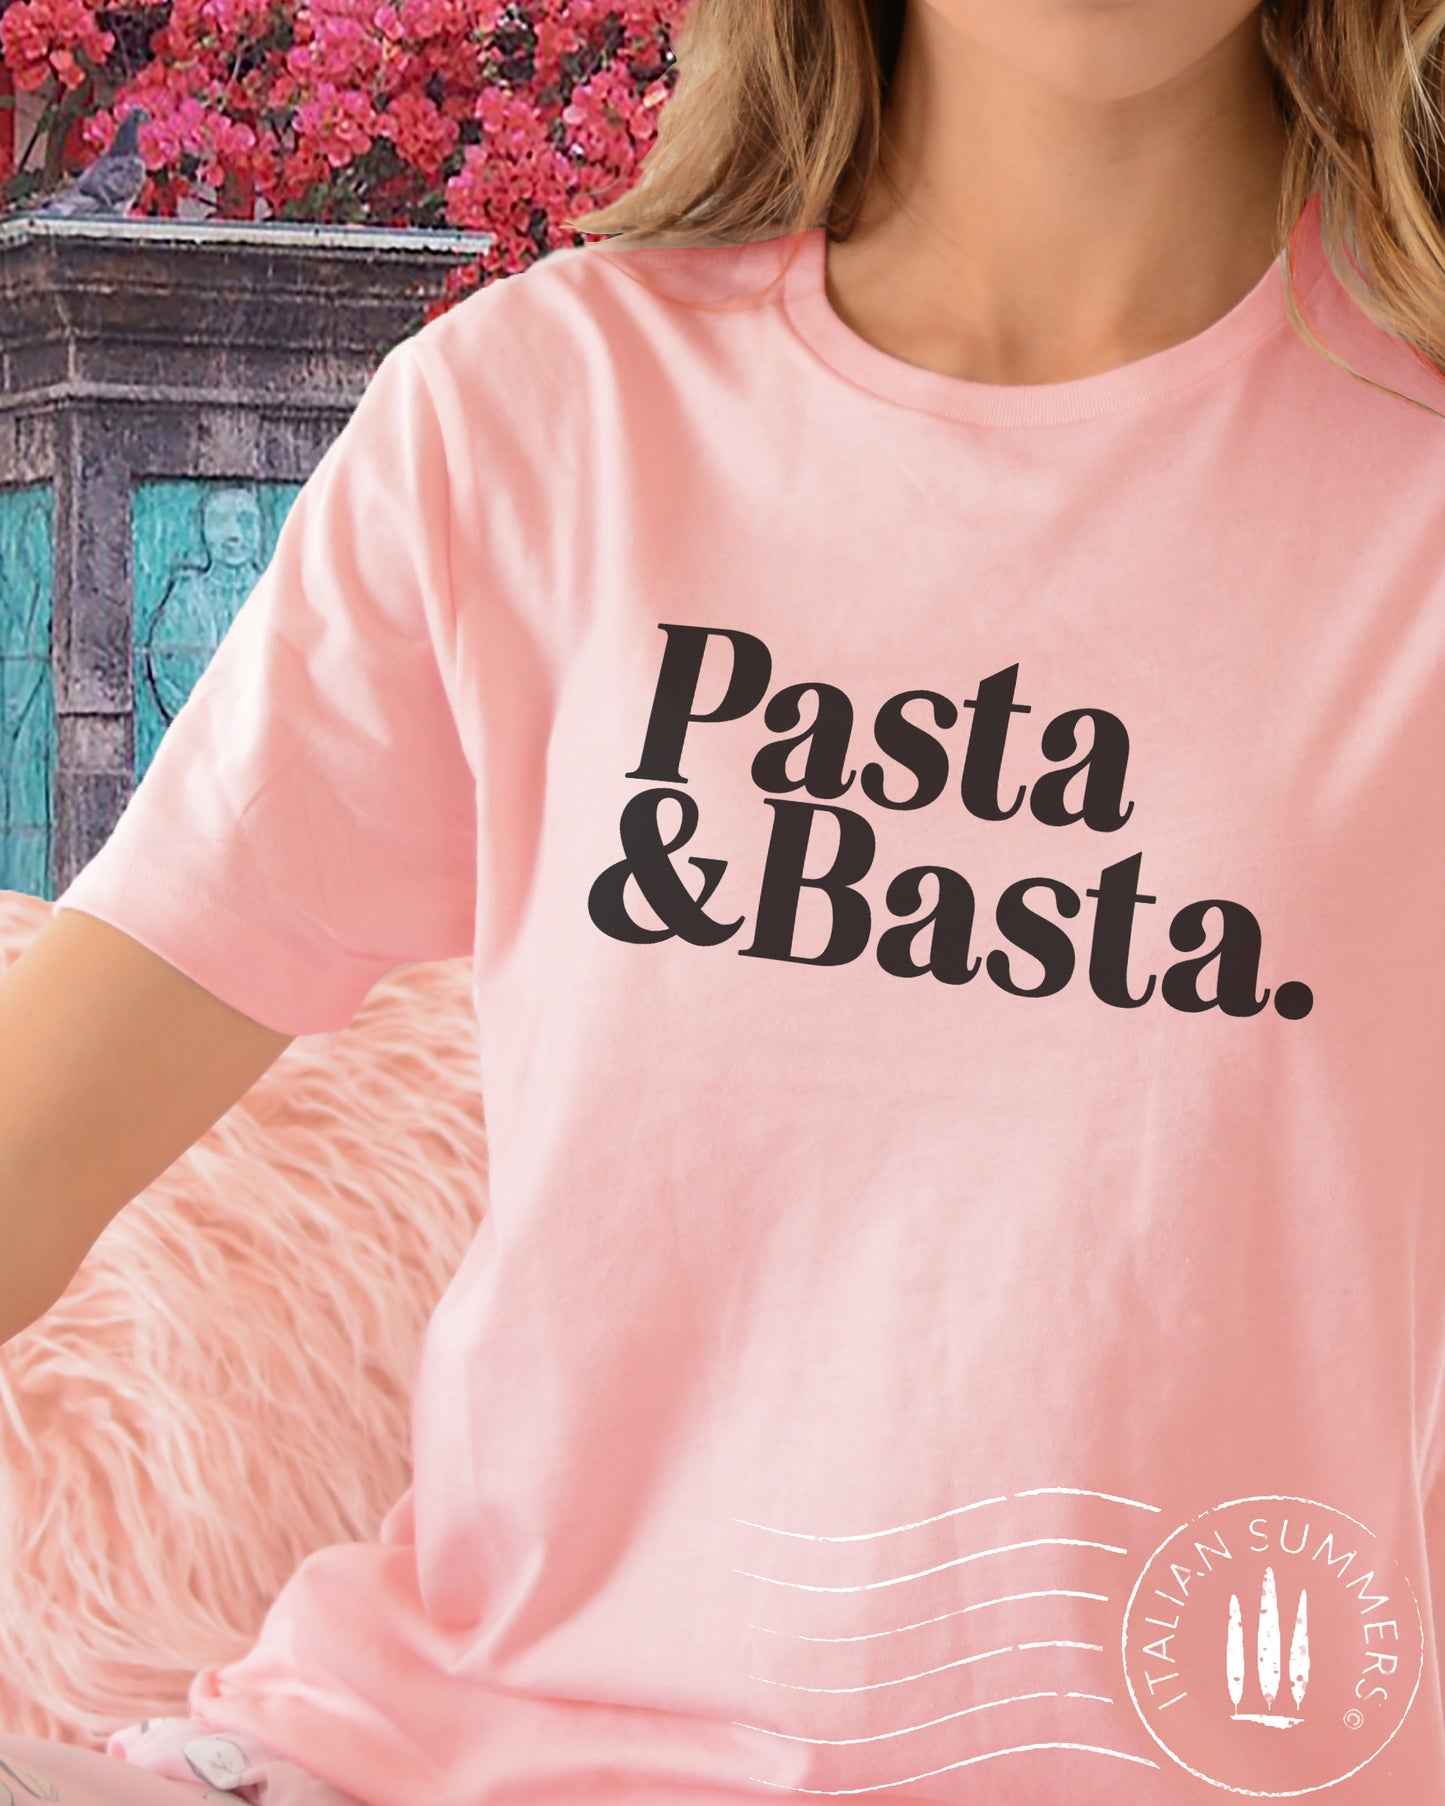 T Shirt PASTA e BASTA  Italy inspired t-shirt by Italian Summers